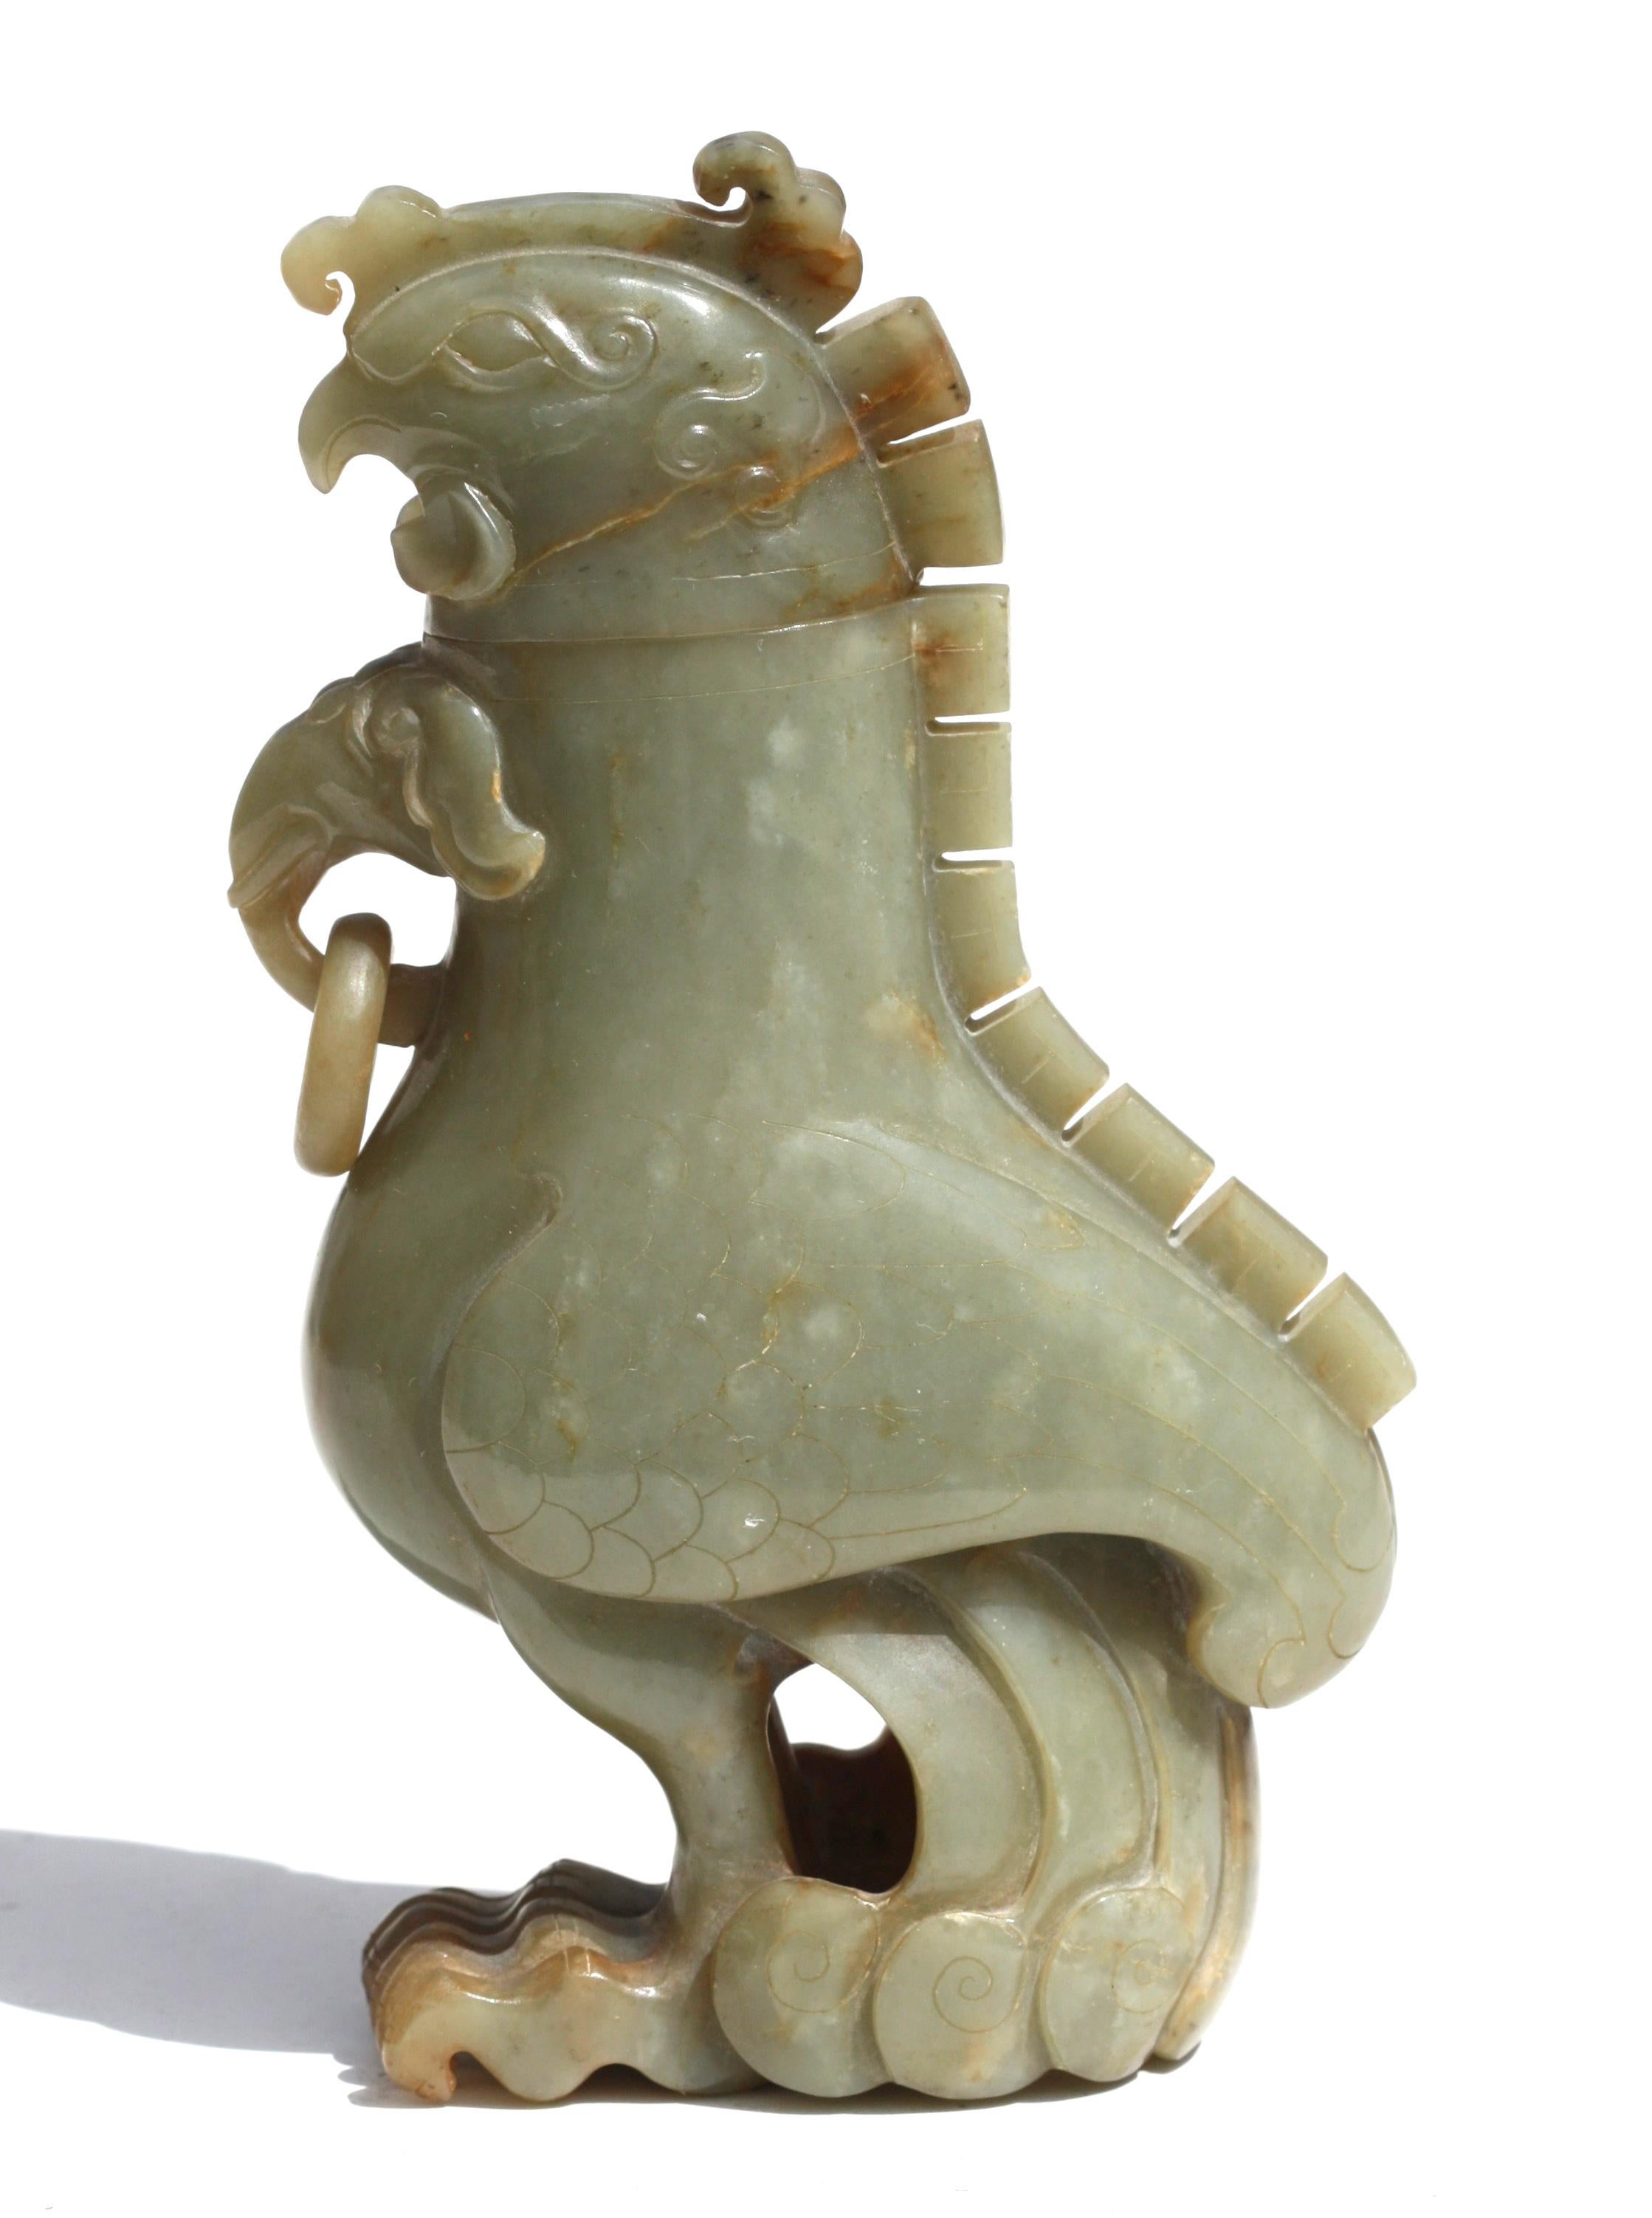 Chinesische geschnitzte helle Kameenvase und Deckel aus geschnitztem Kaminsims
Geschnitzt in Form eines „mythischen Hühners“, stehend mit langem Gewand, vorne mit langem Hals, hat ein sehr ungewöhnlicher mythischer Elefantenkopf mit Tusken und